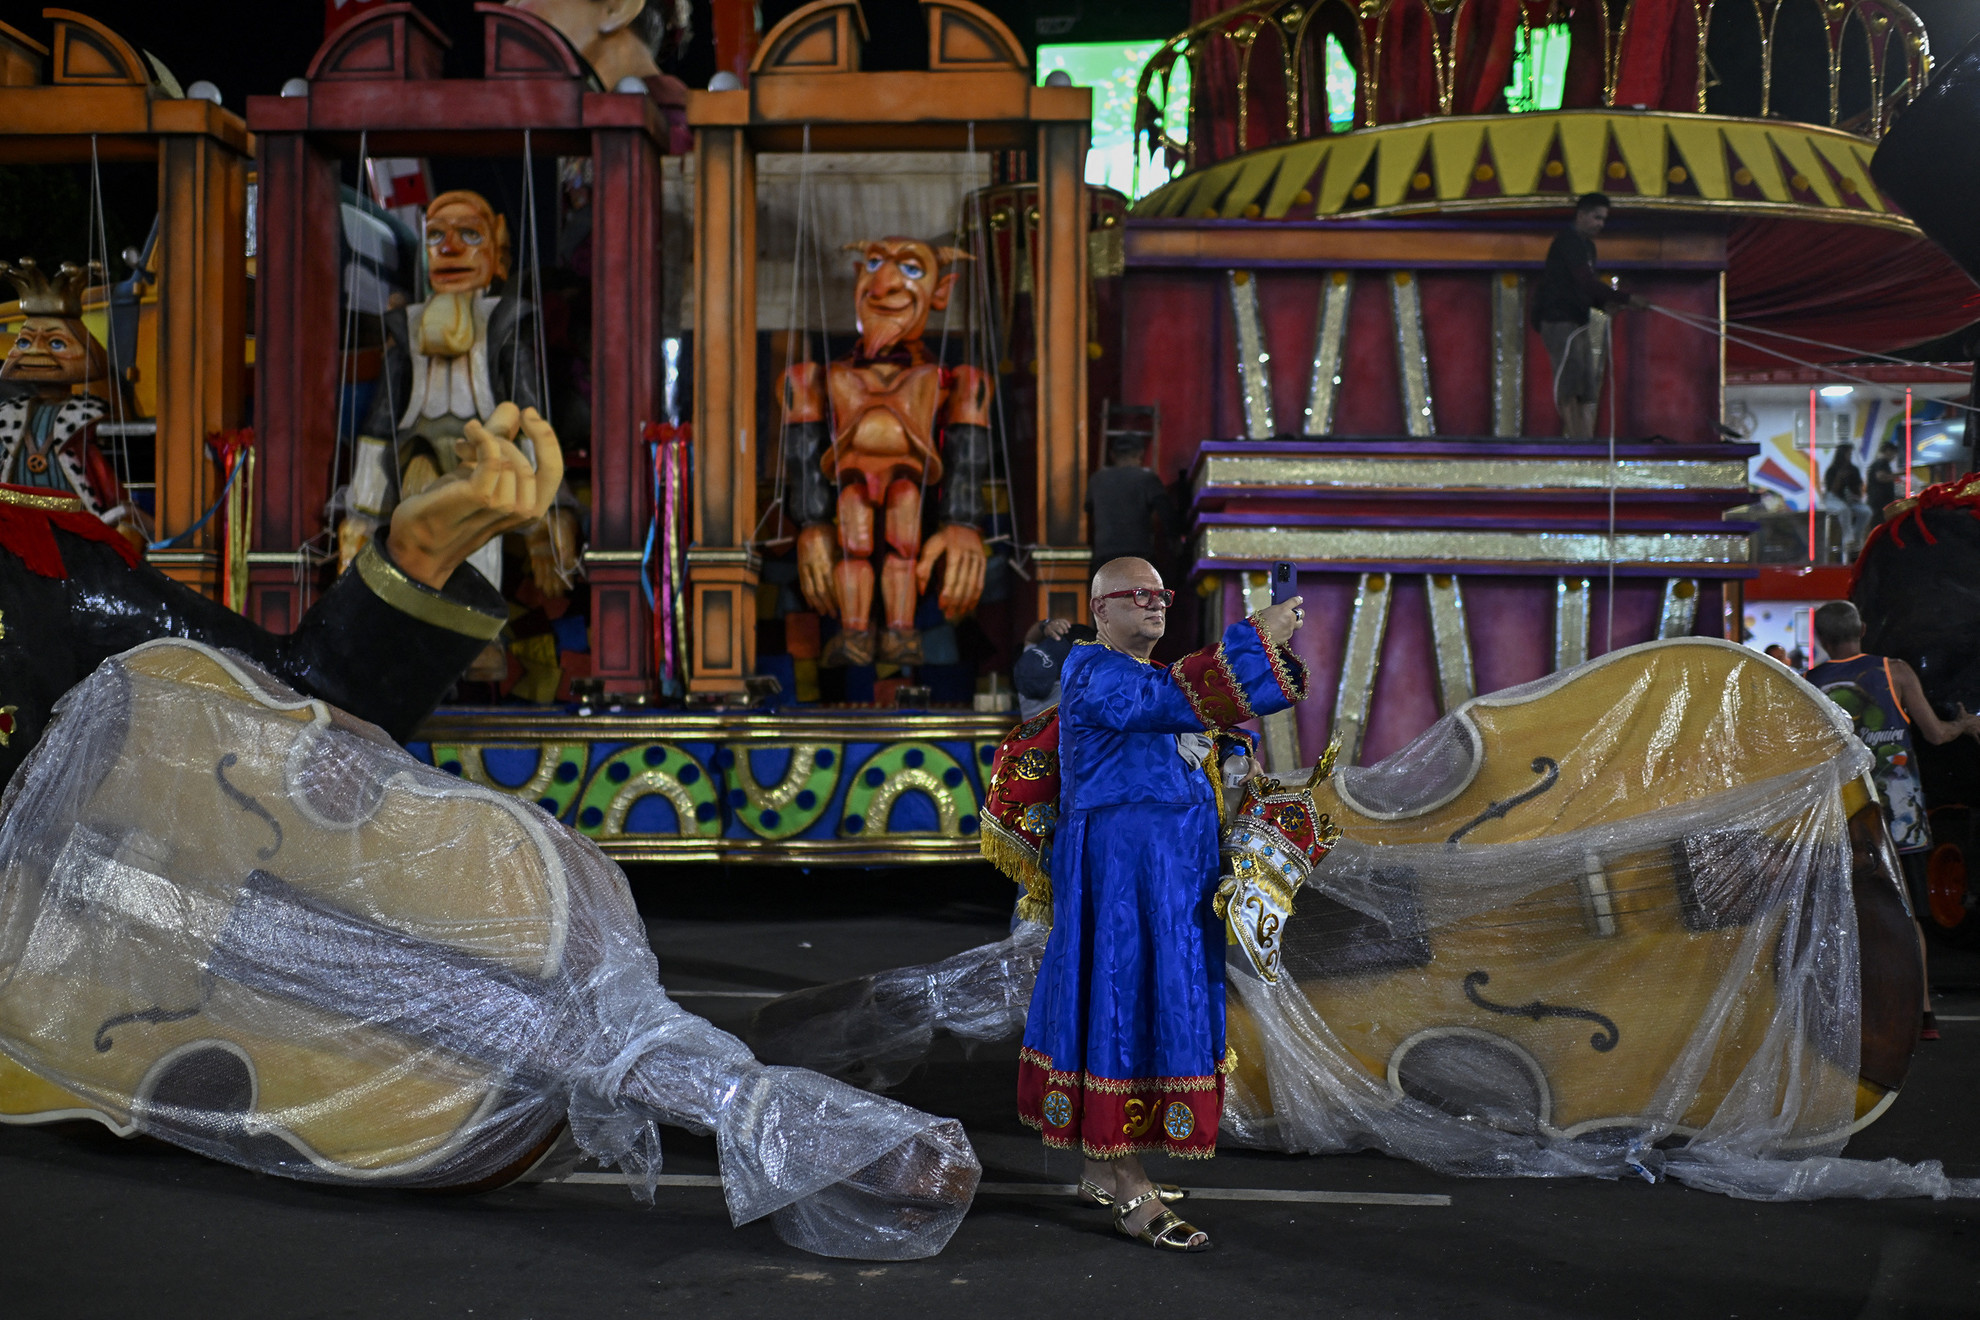 A Porto da Pedra szambaiskola egyik tagja az utolsó simításokat végzi a karneváli felvonulás előtt